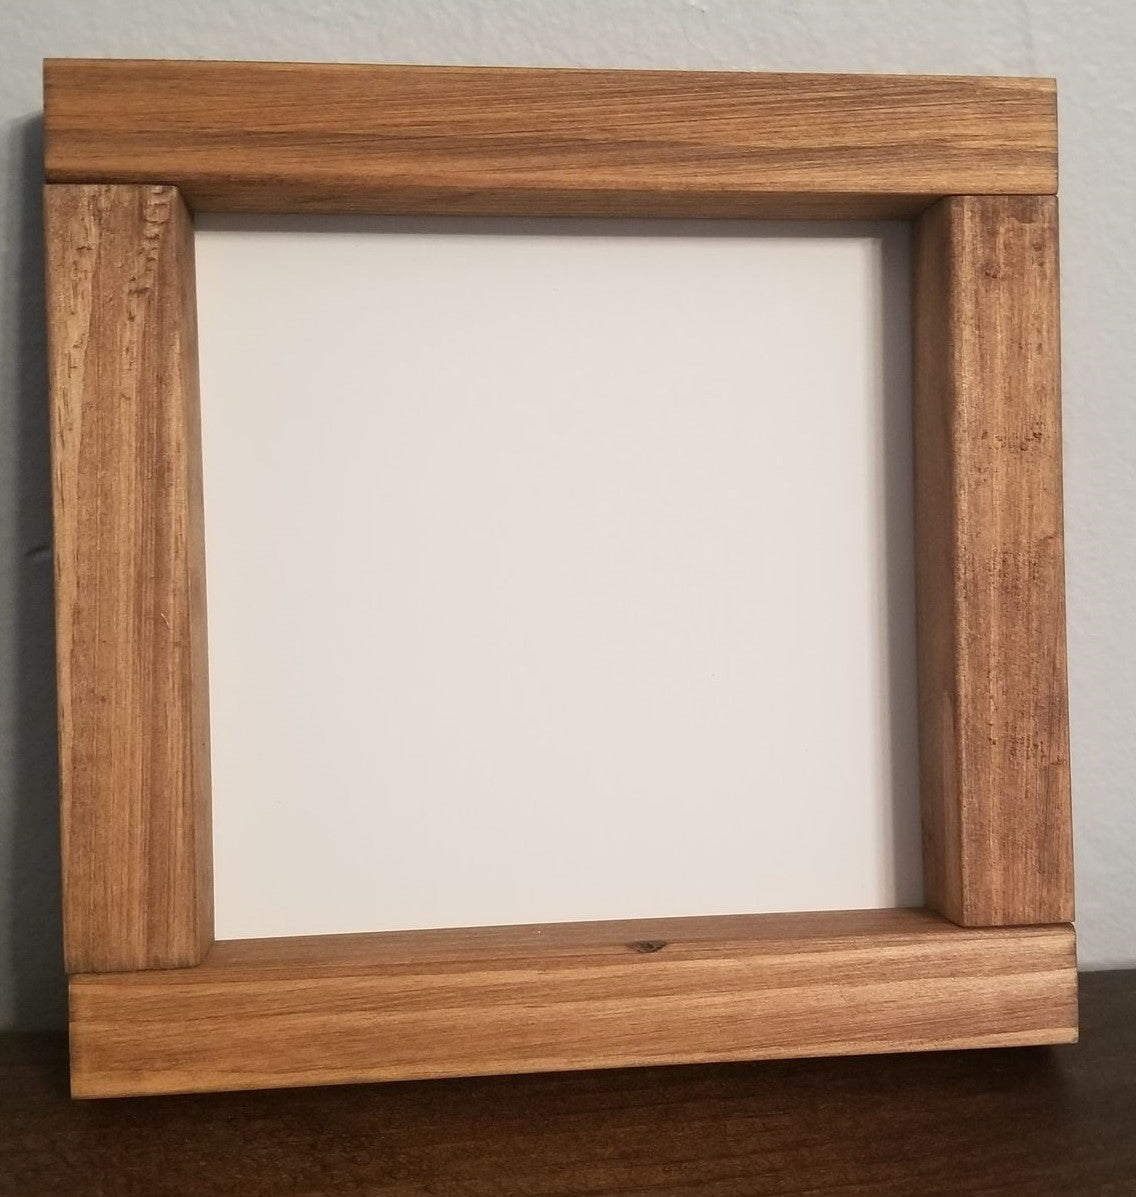 6x6 Farmhouse Style Wood Frame